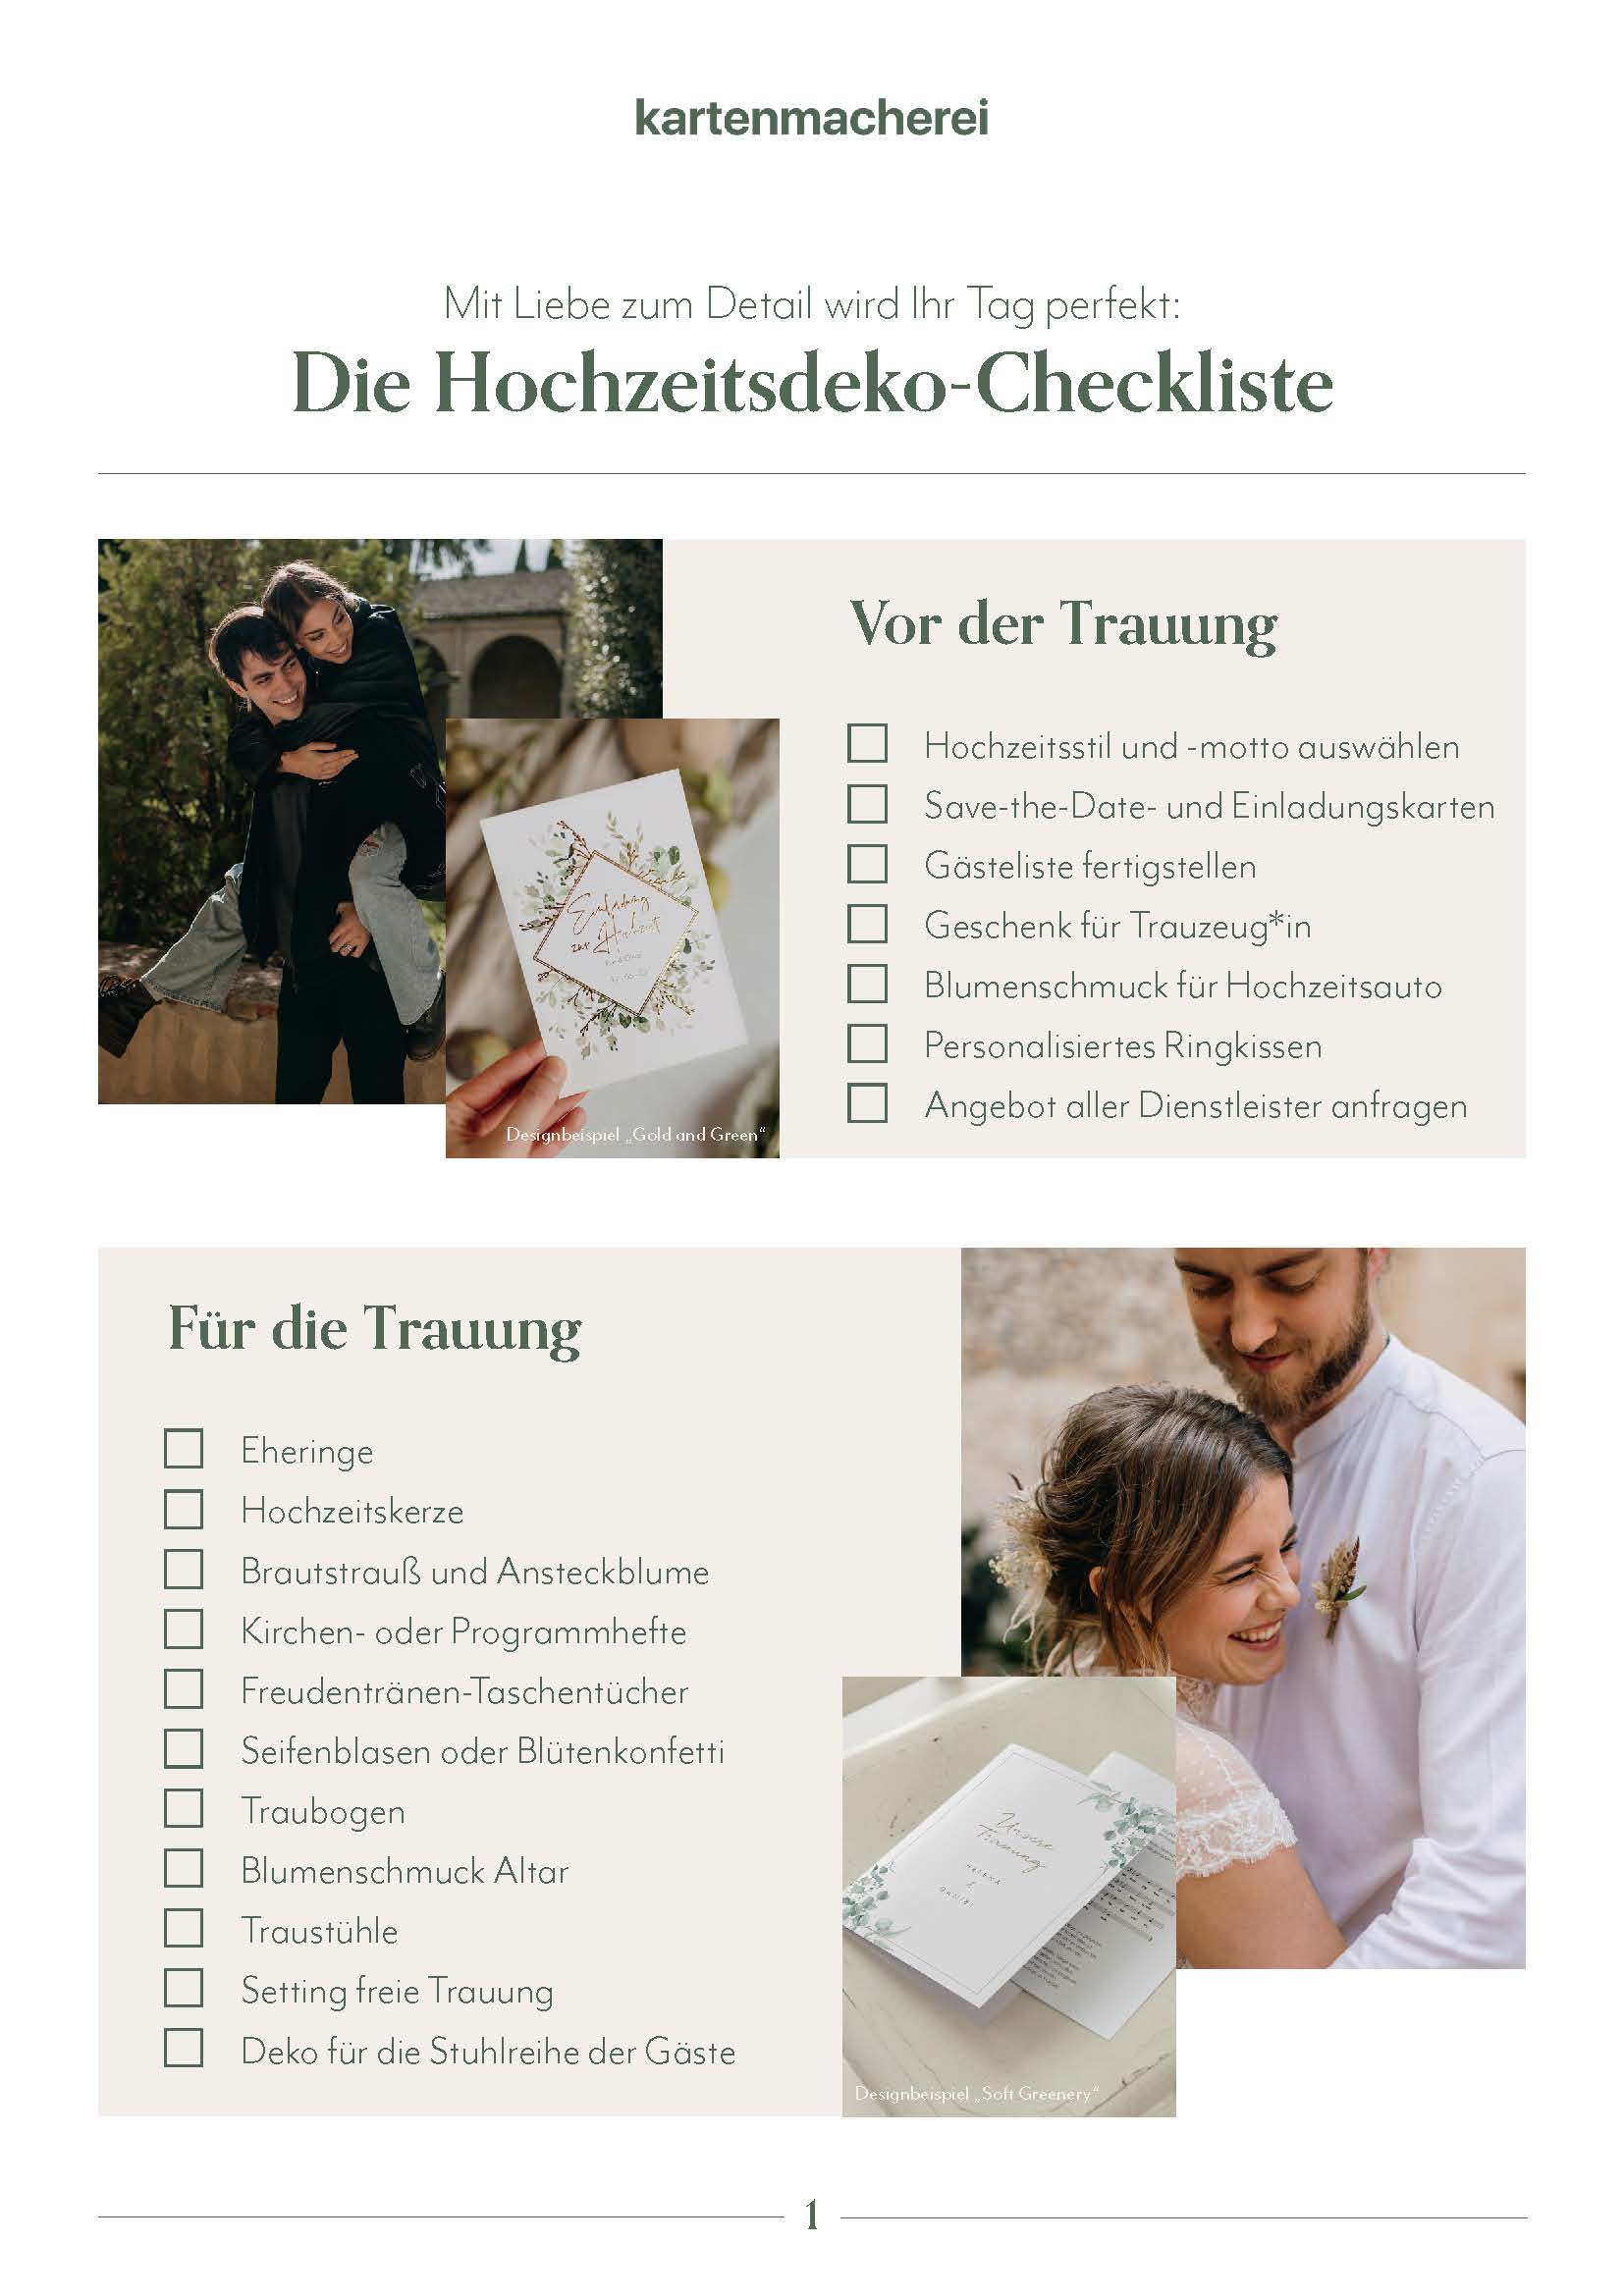 Hochzeitsdeko Checkliste zum Downloaden & Ausdrucken